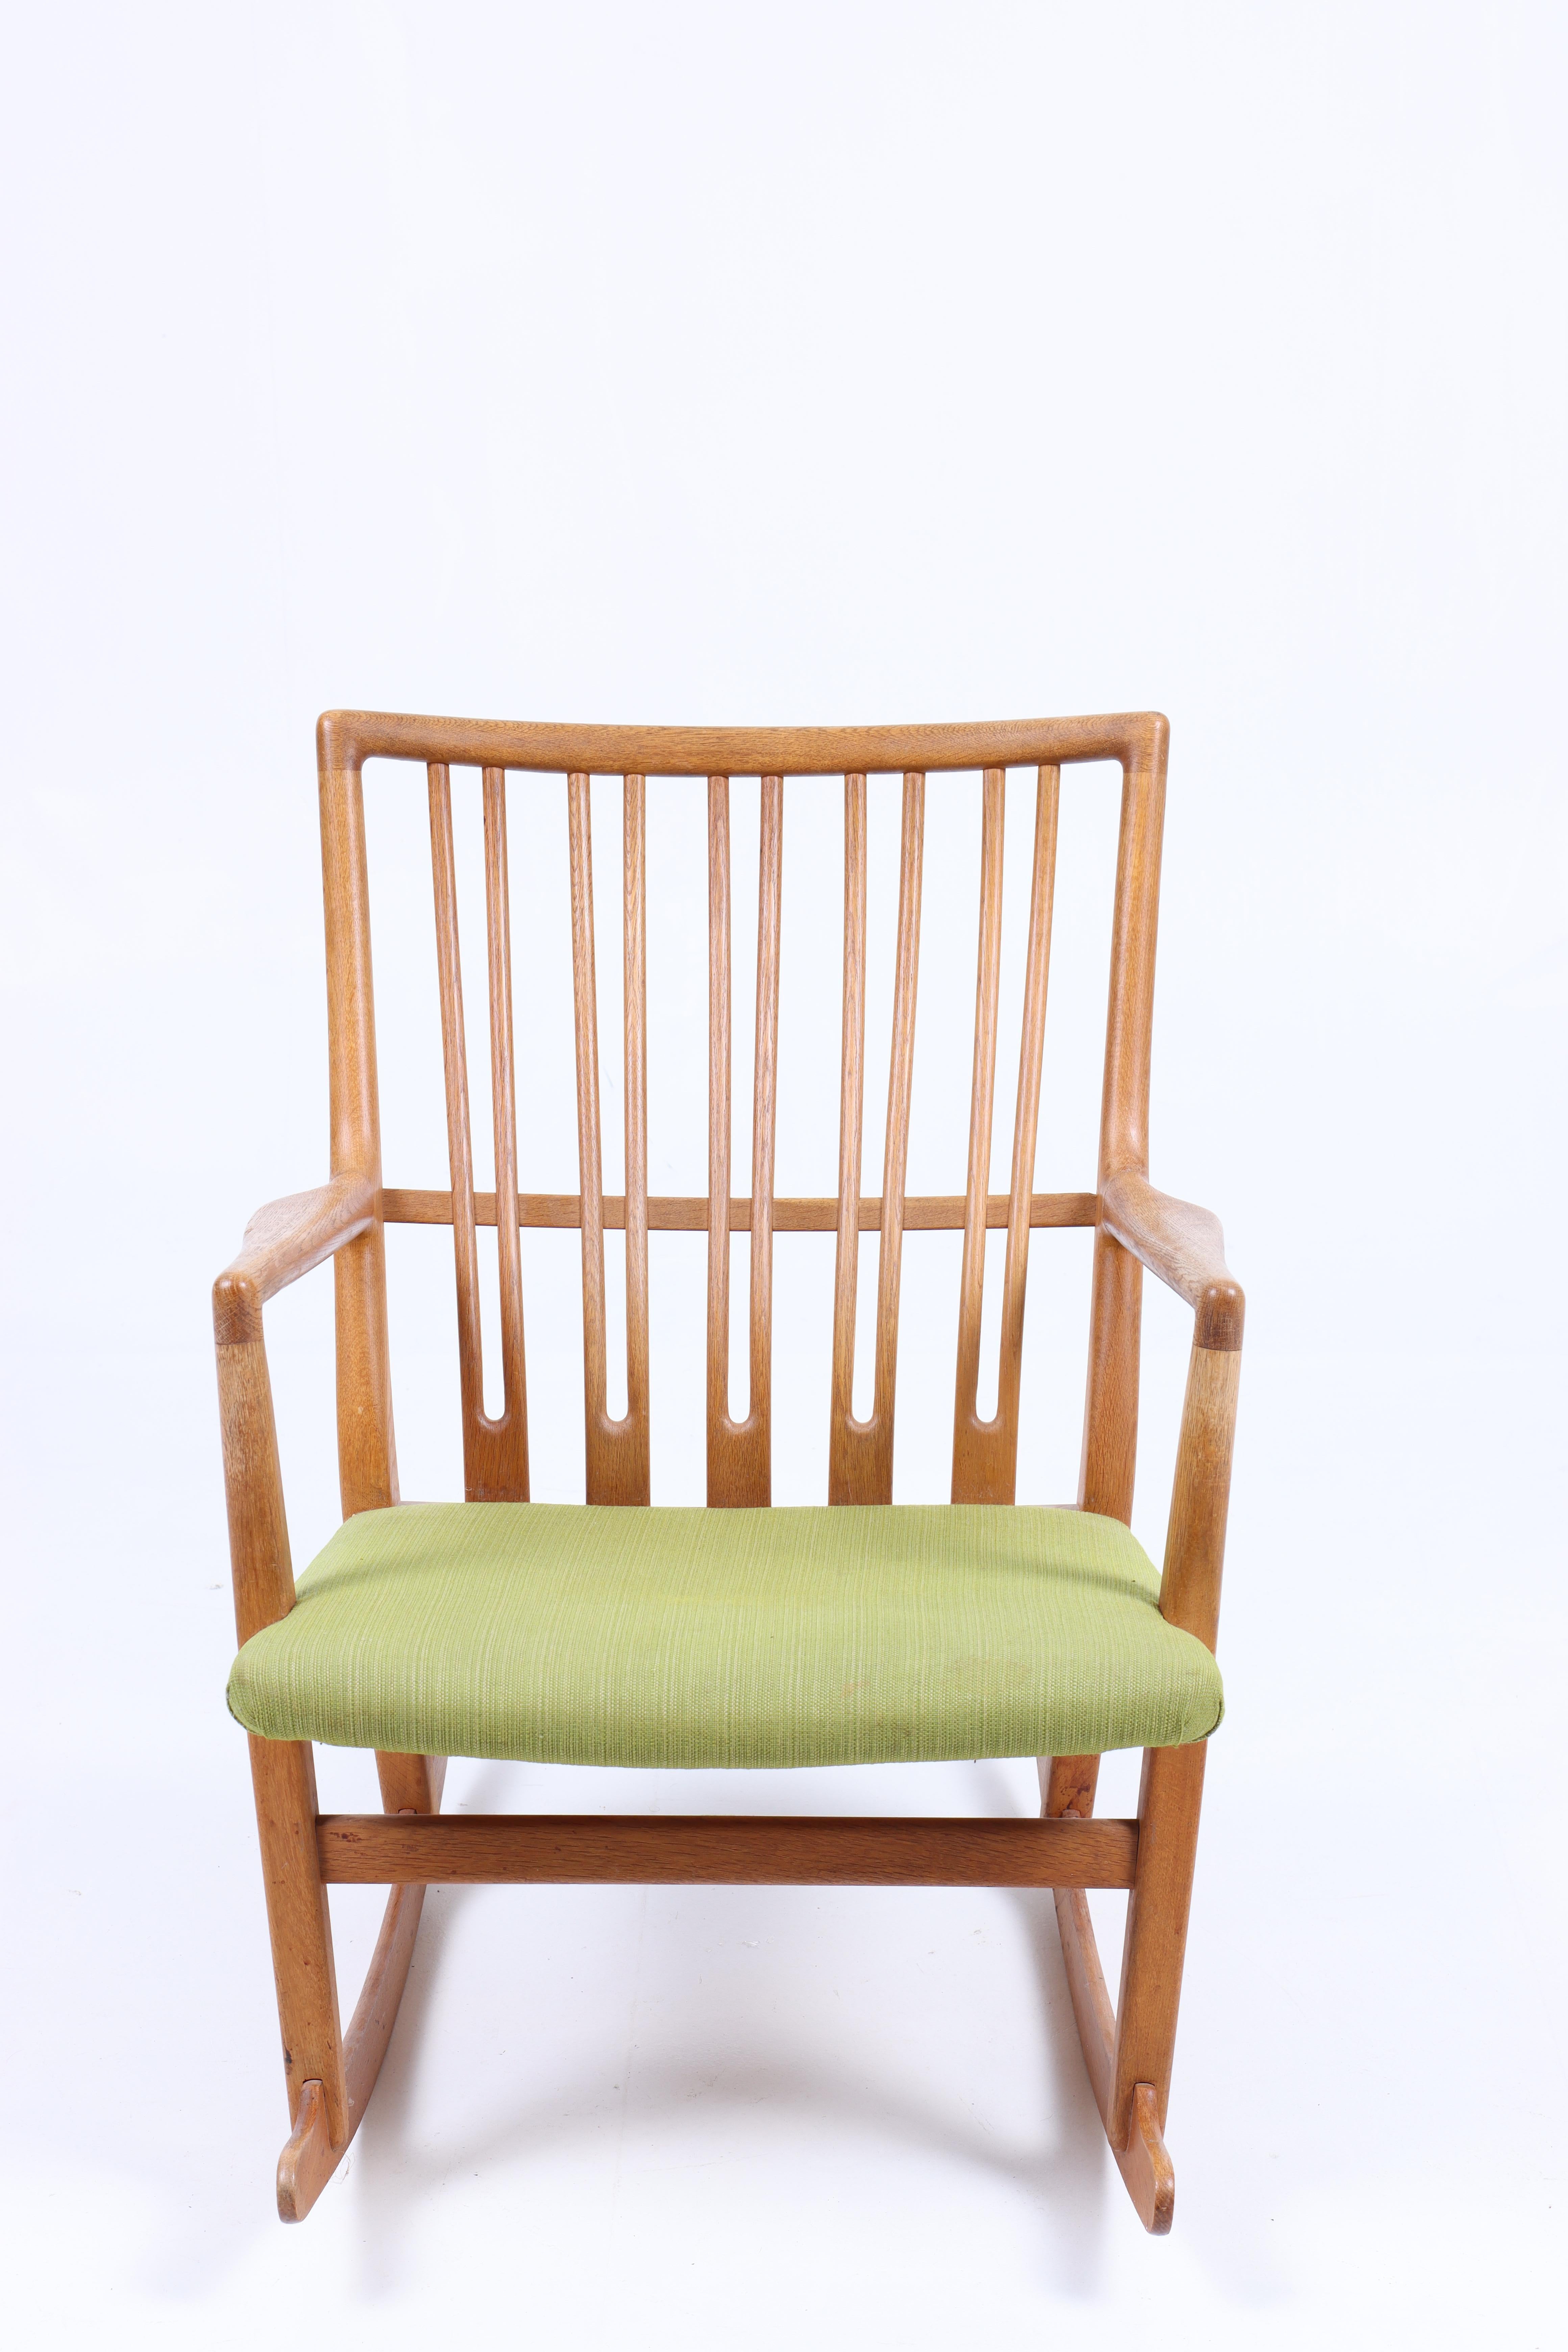 Chaise à bascule en chêne et tissu, conçue par Hans Wegner et fabriquée par Mikael Laursen. Excellent état.